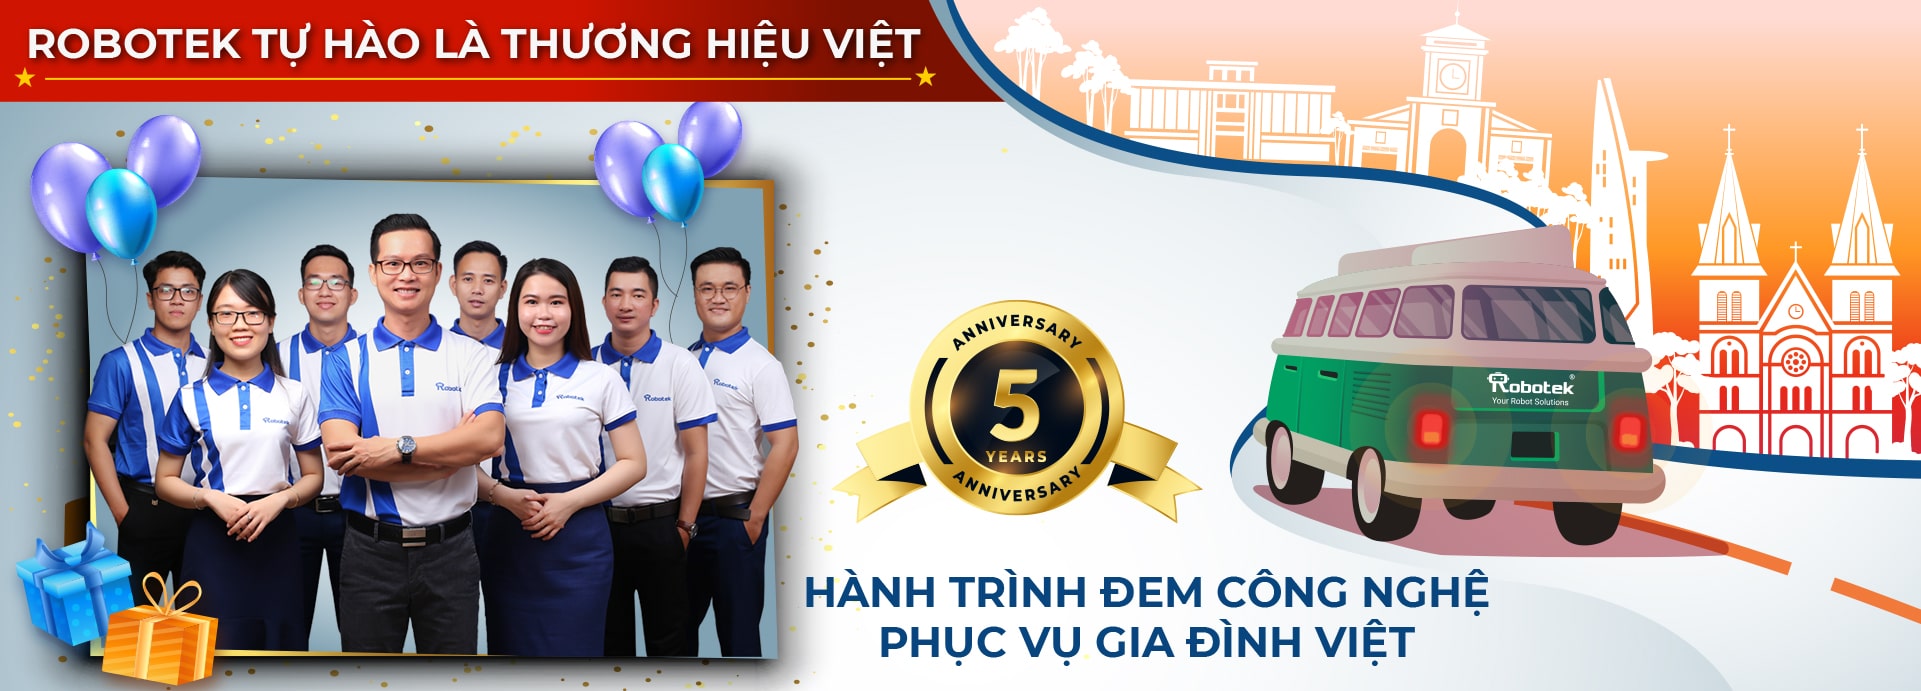 banner website robot hut bui lau nha